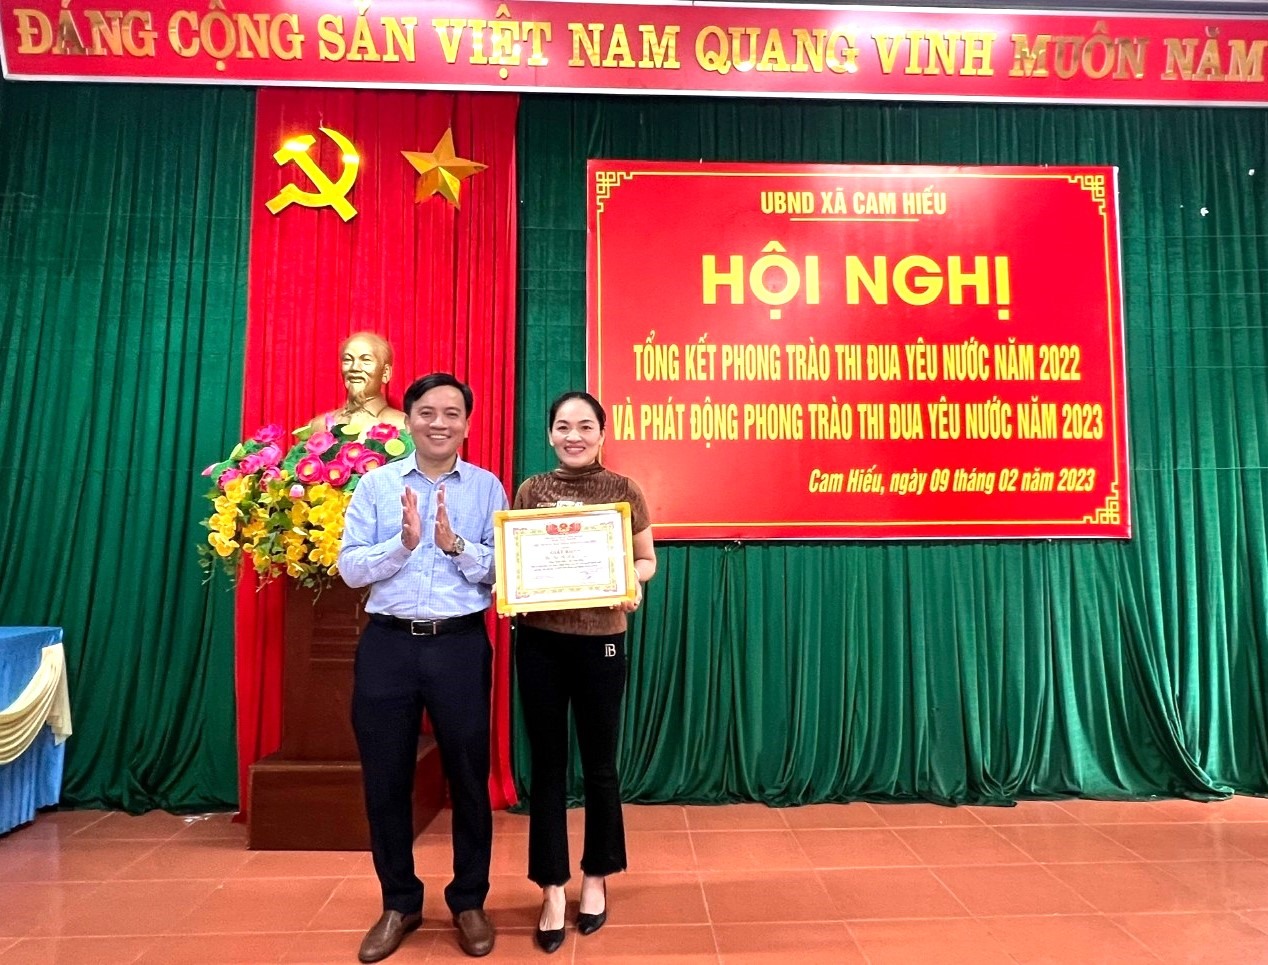 UBND xã Cam Hiếu trao giấy khen cho chị Bùi Thị Kiều Hương vì đã có việc làm cao đẹp nhặt được của rơi trả người đánh mất với tài sản hơn 15 triệu đồng - Ảnh: L.T